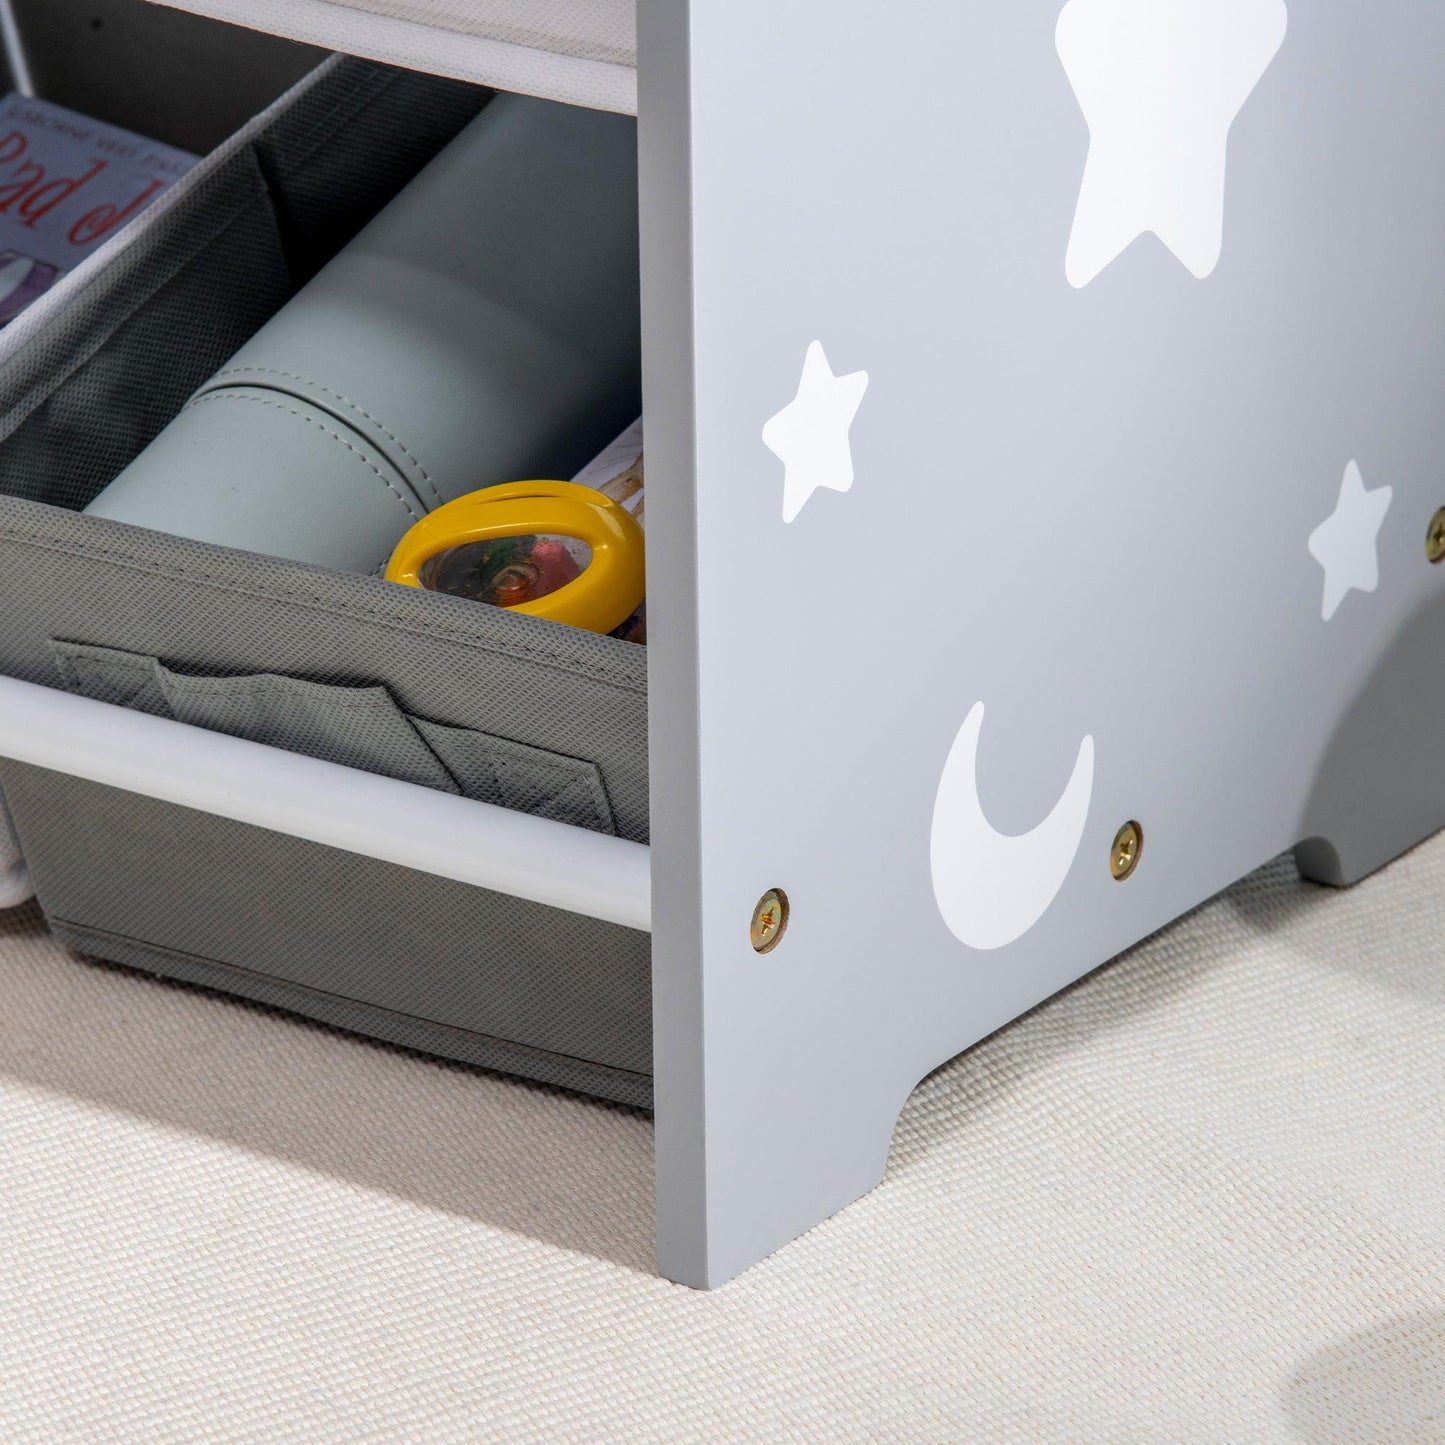 ZONEKIZ Storage Unit w/ 9 Removable Storage Baskets for Nursery Playroom - Grey